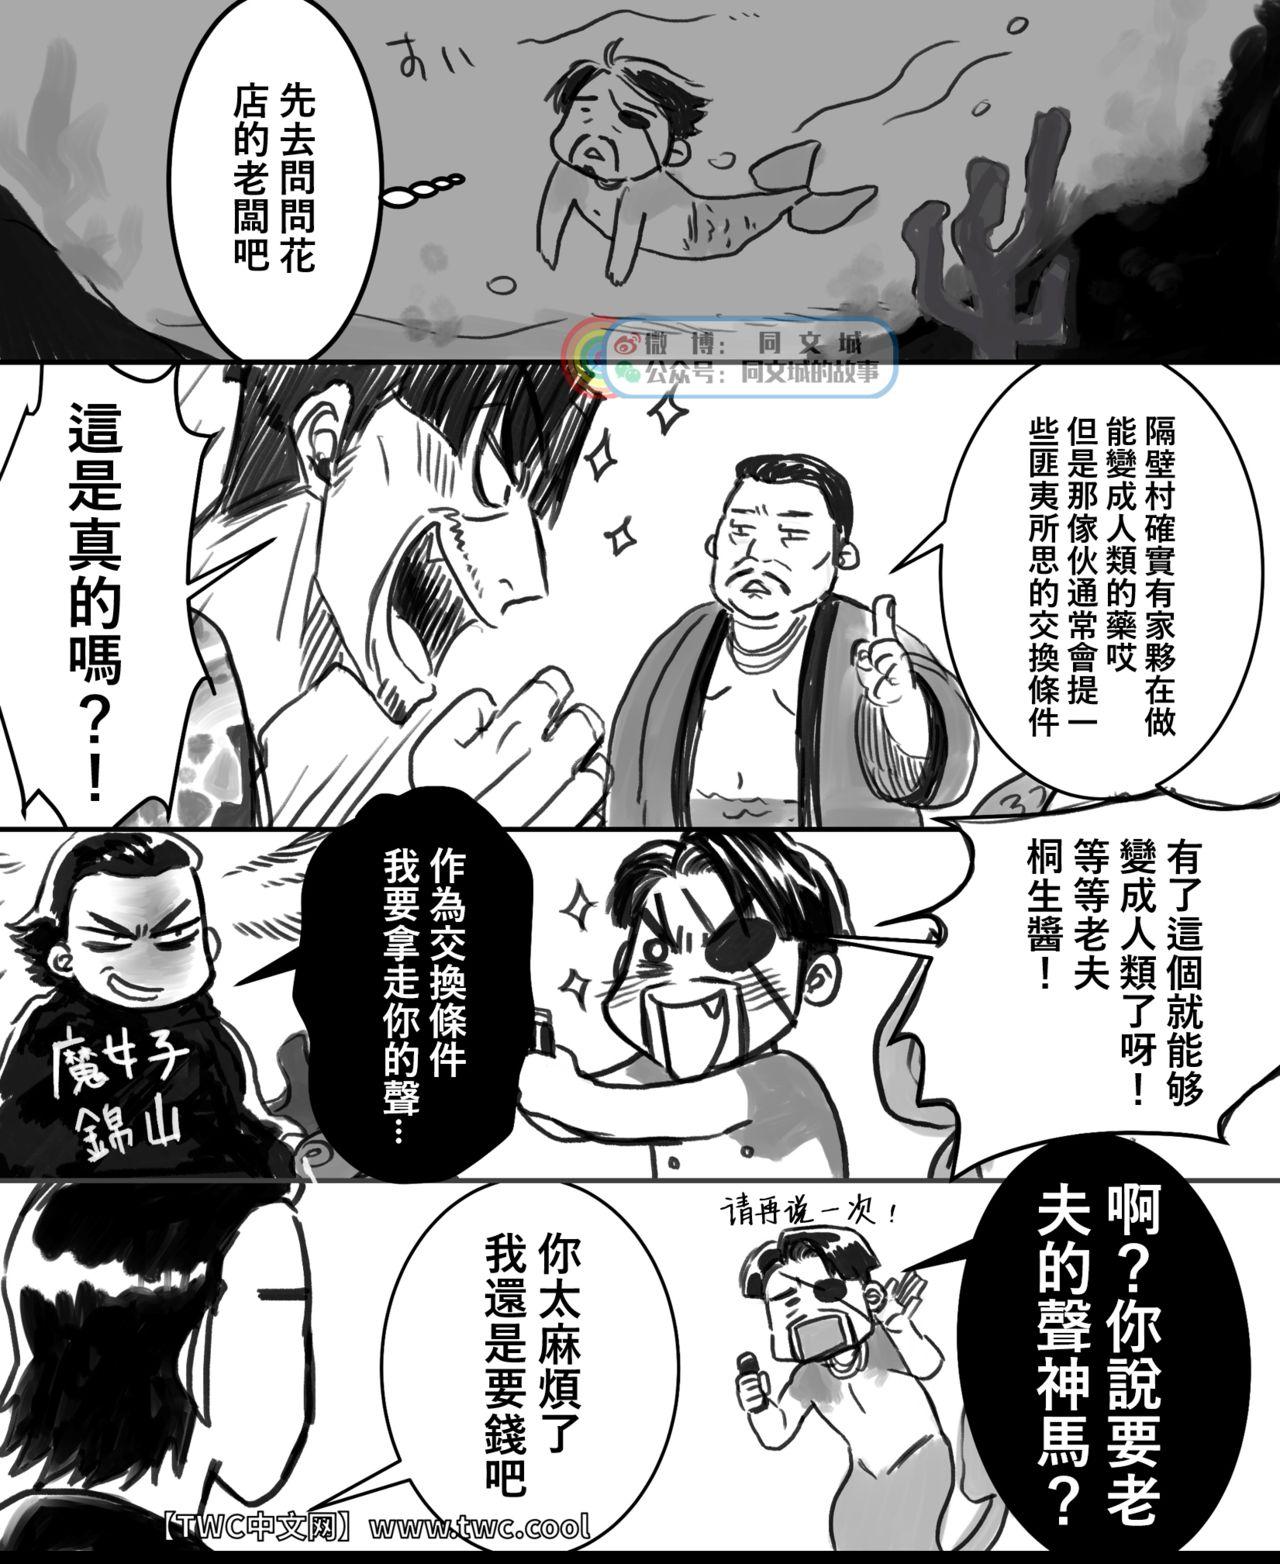 Branquinha Gokudou Ningyo Majima - Ryu ga gotoku | yakuza Orgame - Page 3